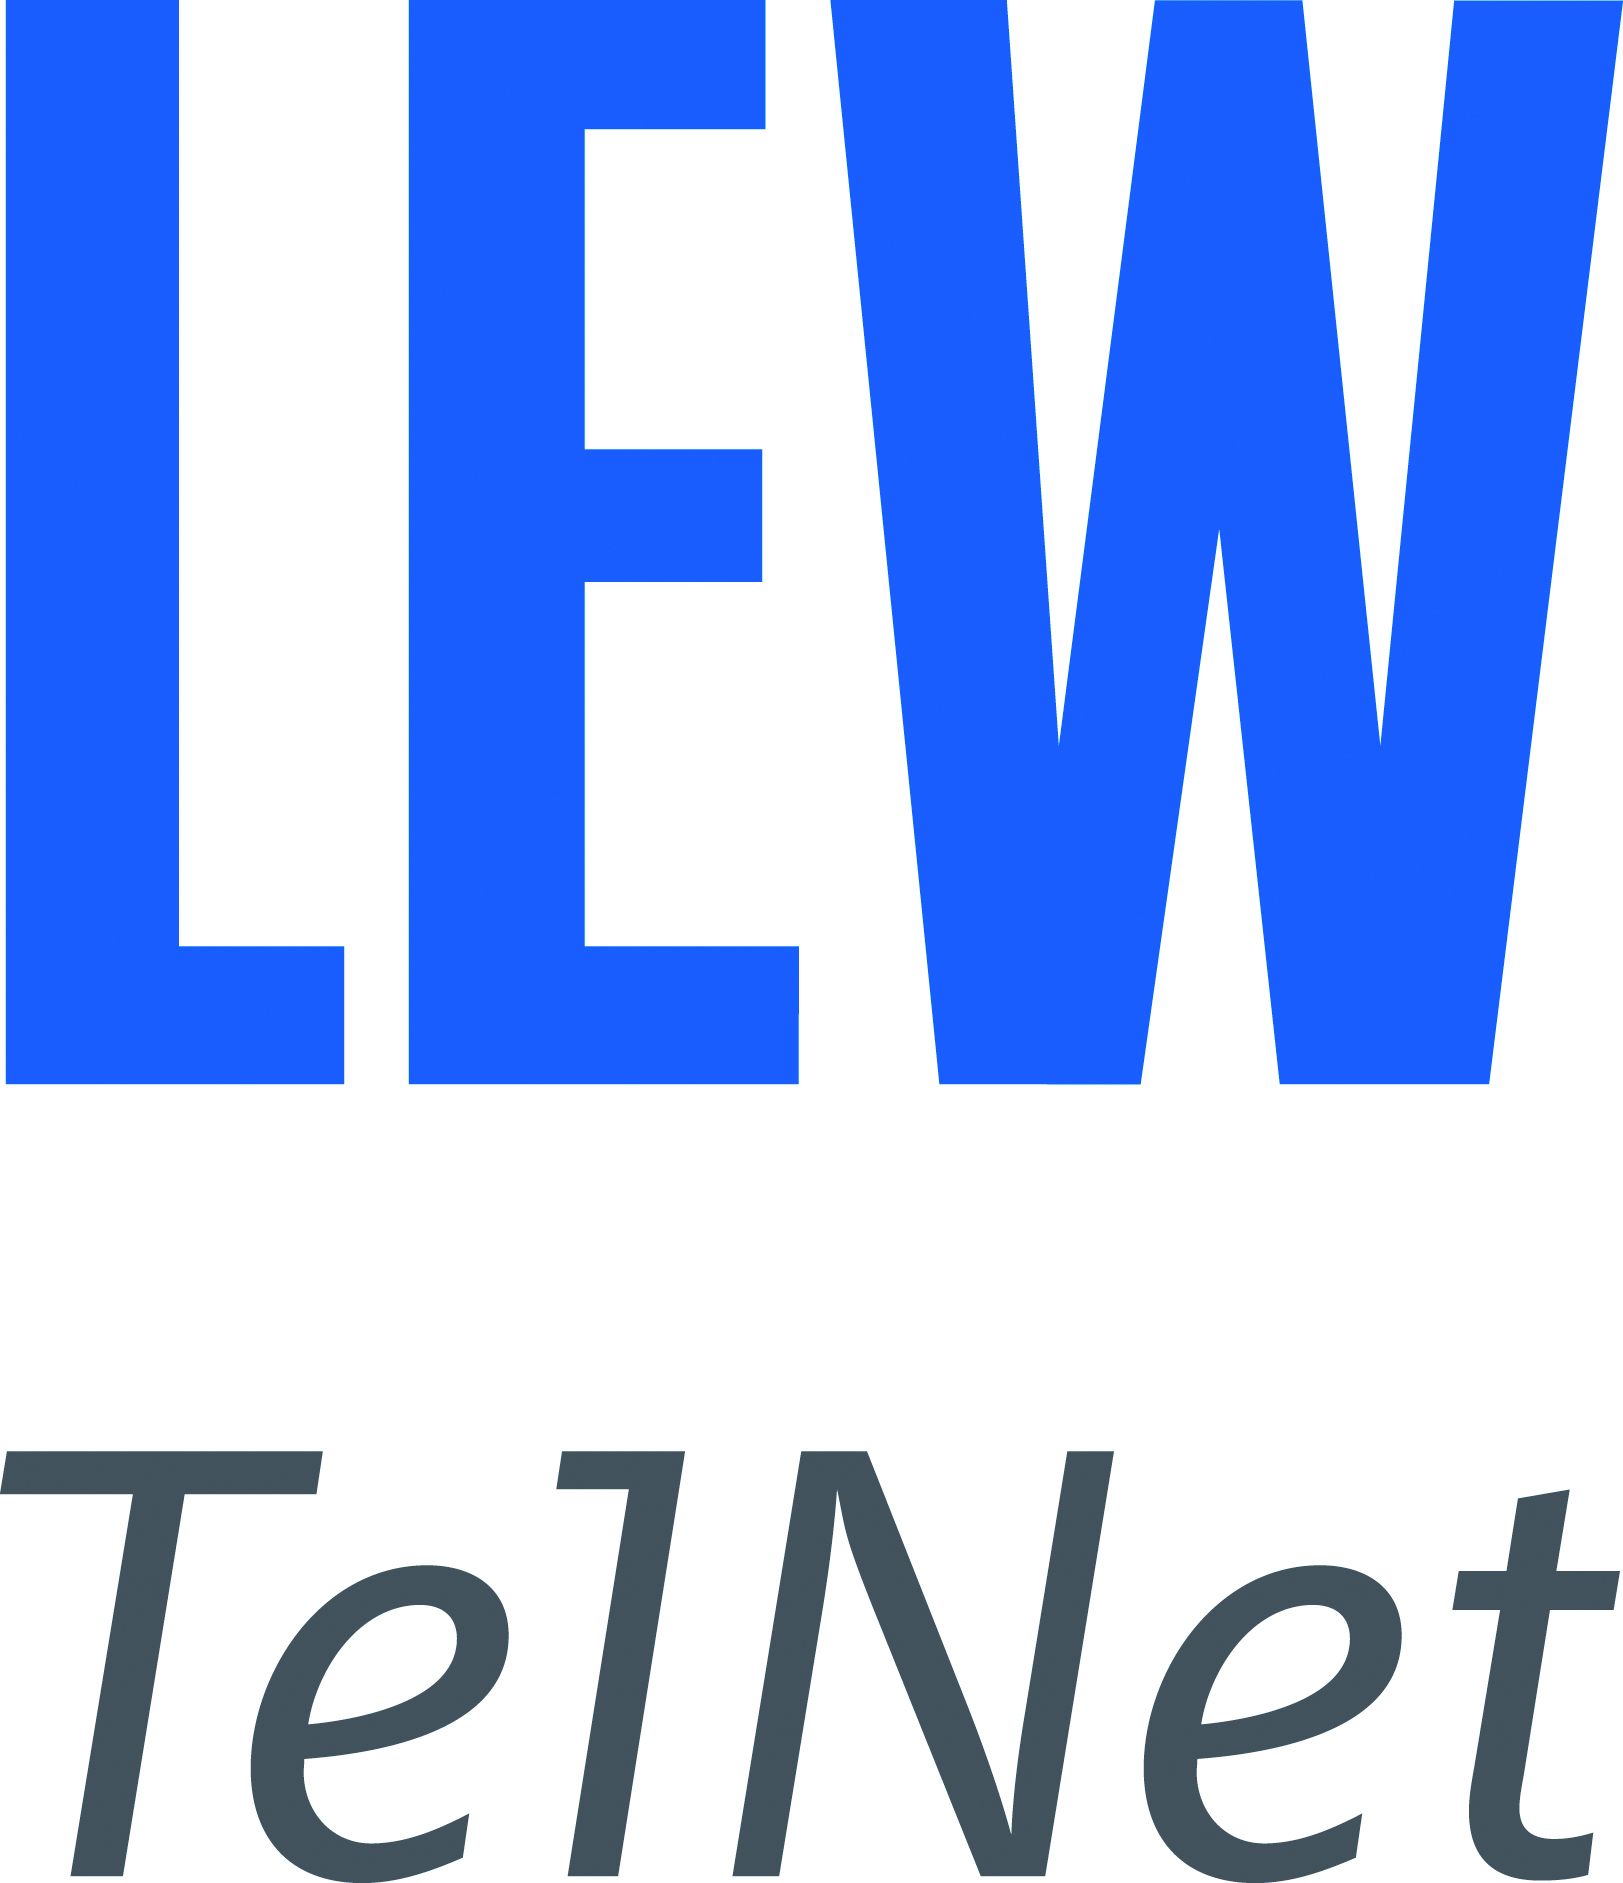 Das Logo der LEW Telnet